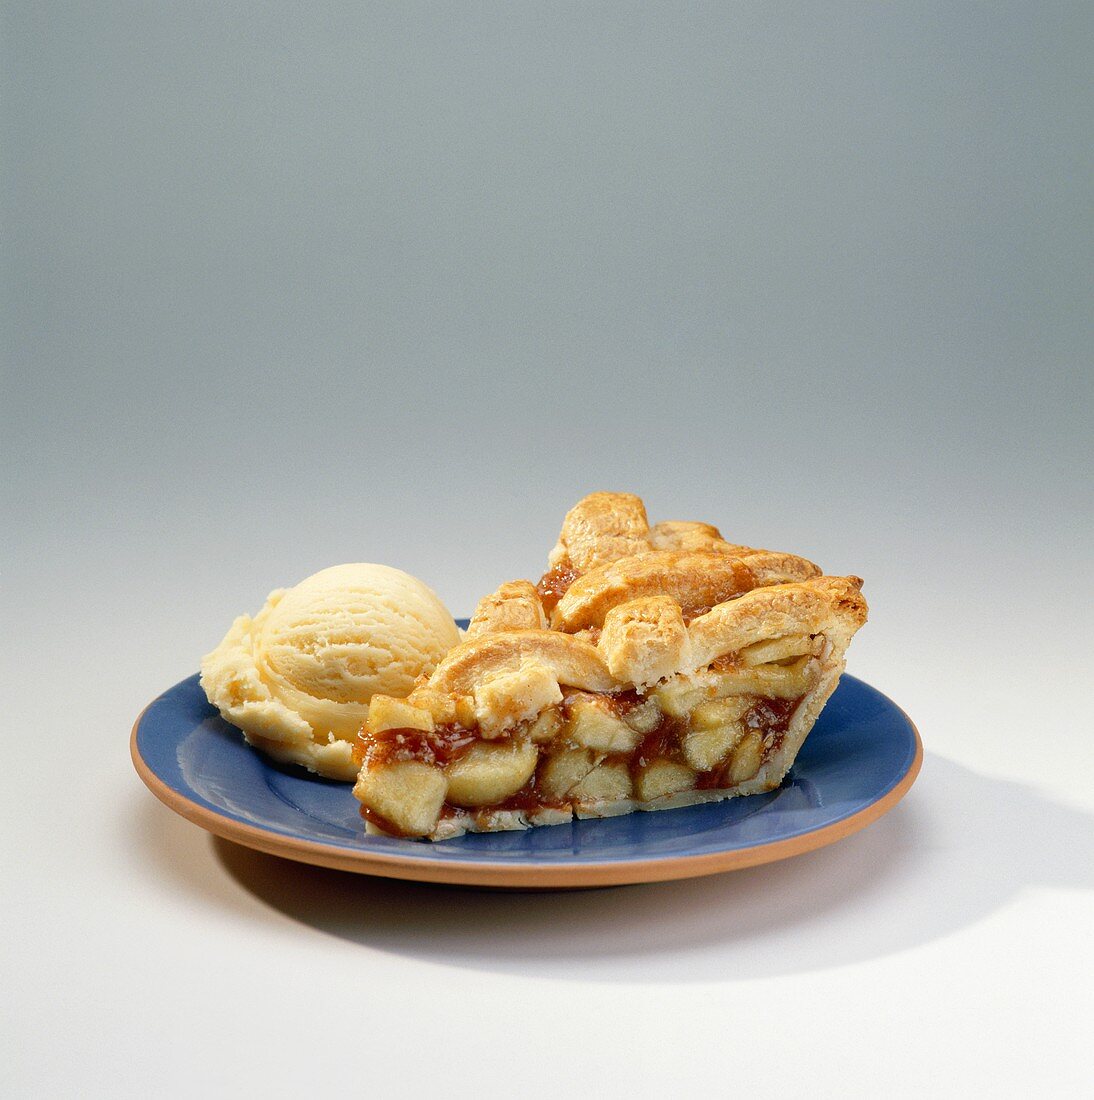 Slice of Apple Pie with Scoop of Vanilla Ice Cream